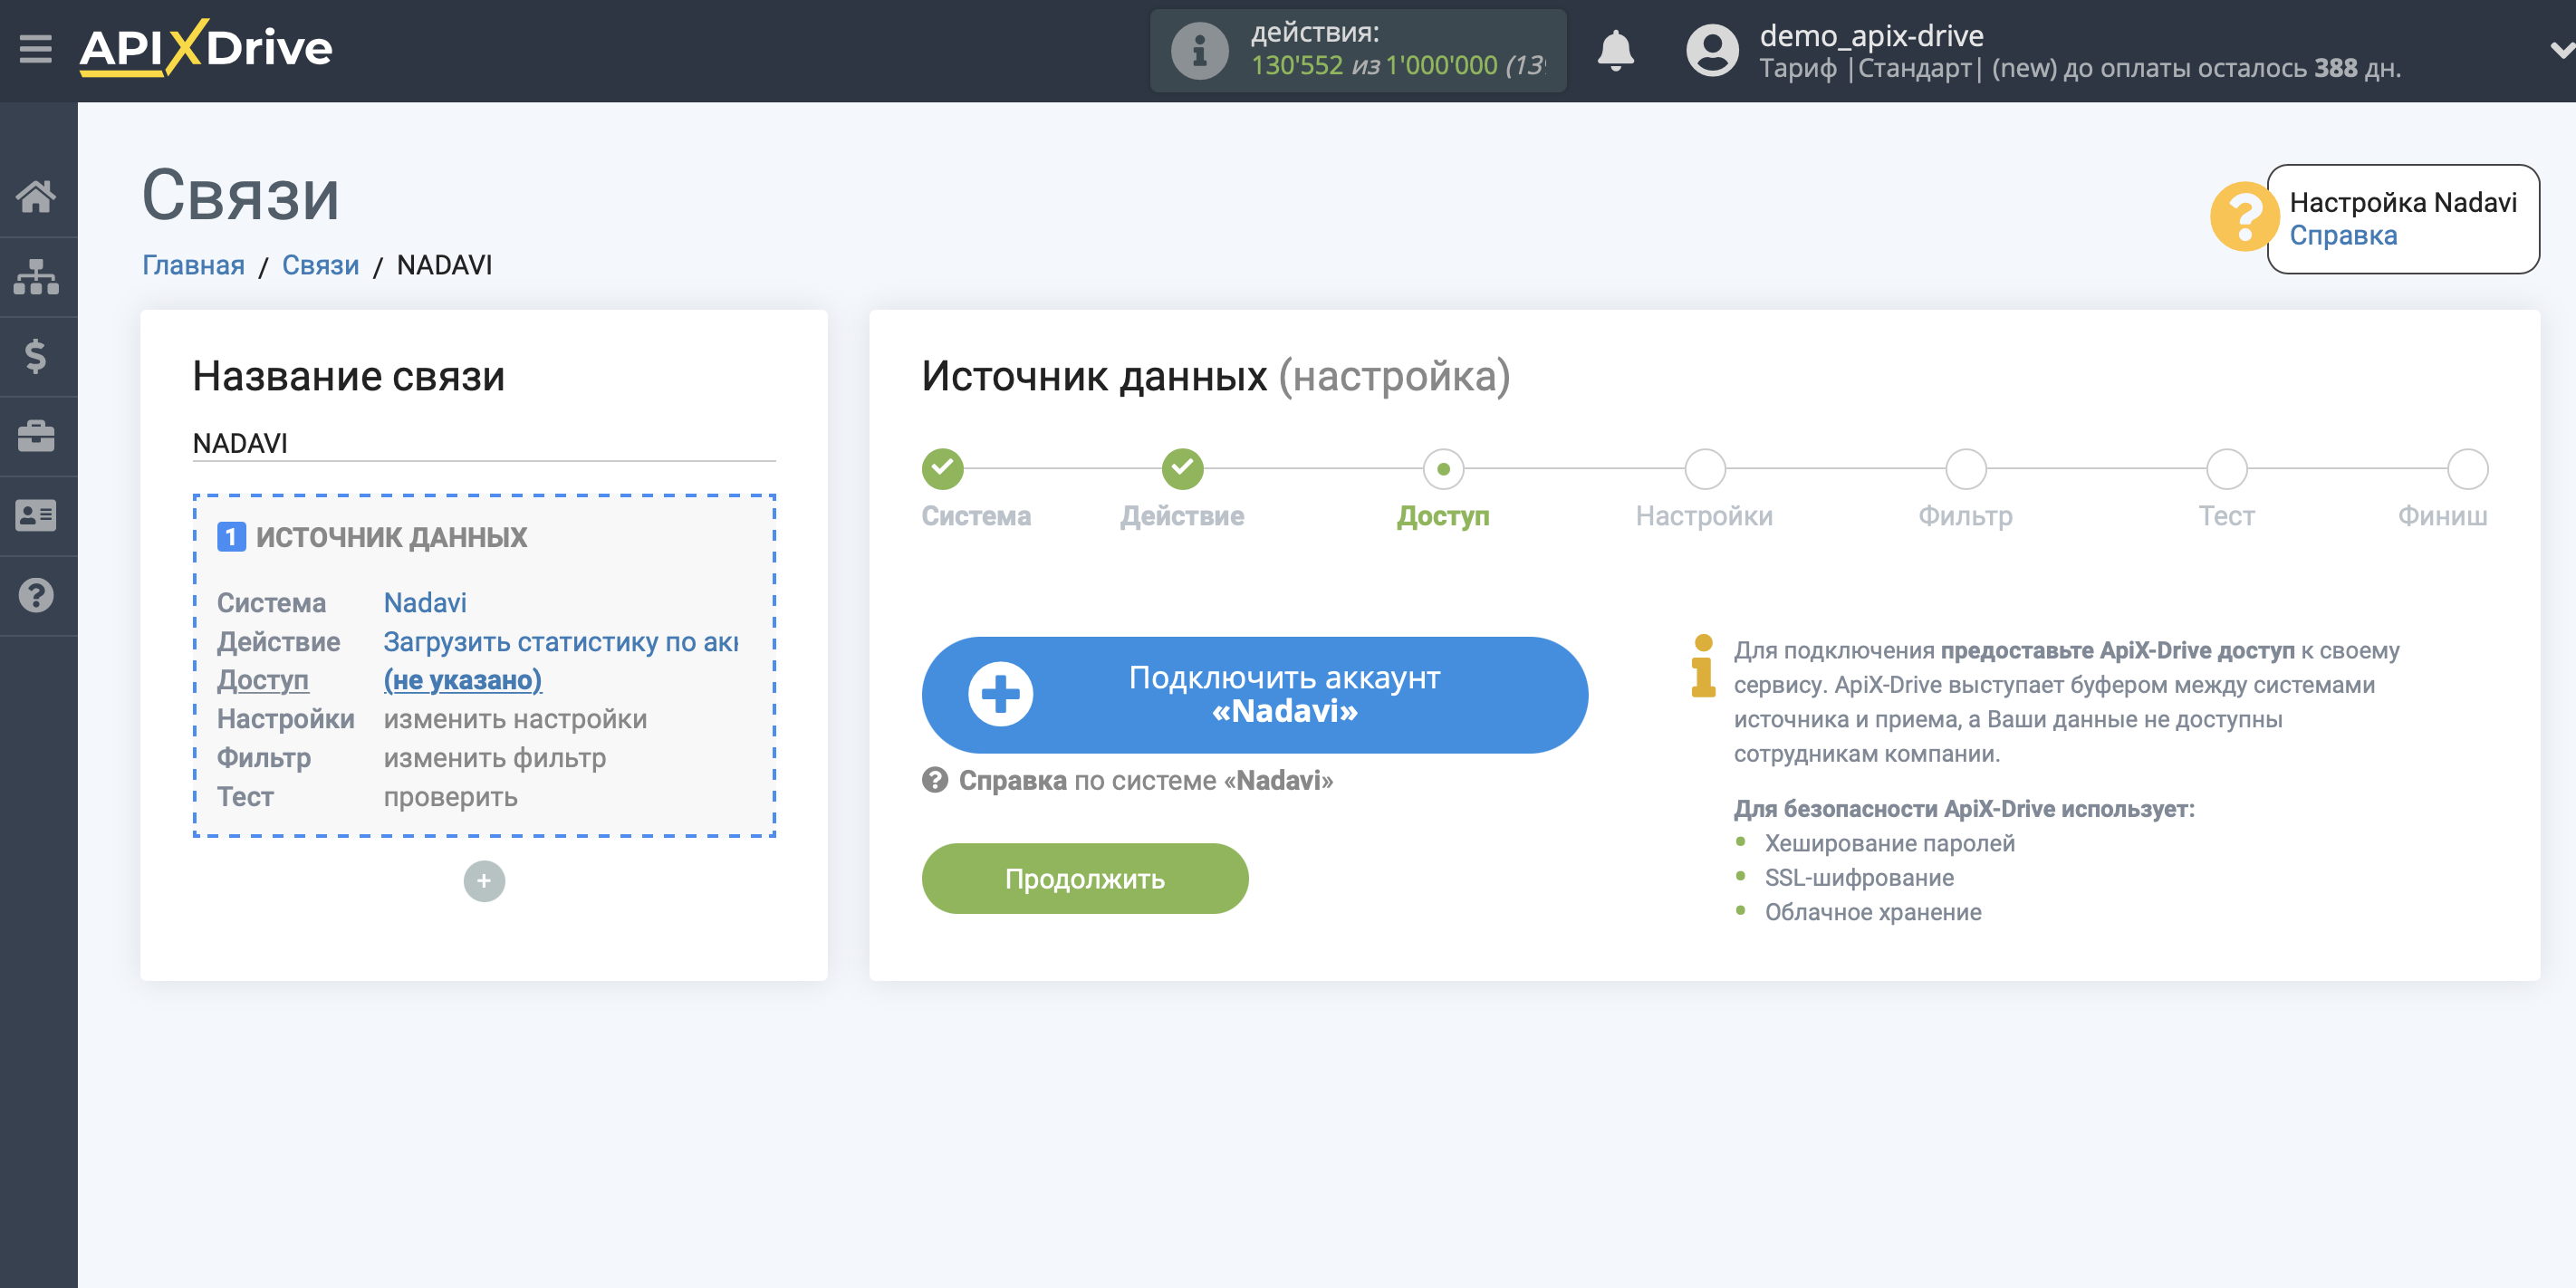 Импорт данных по расходам из Nadavi в Яндекс.Метрику | Подключение аккаунта системы источника данных